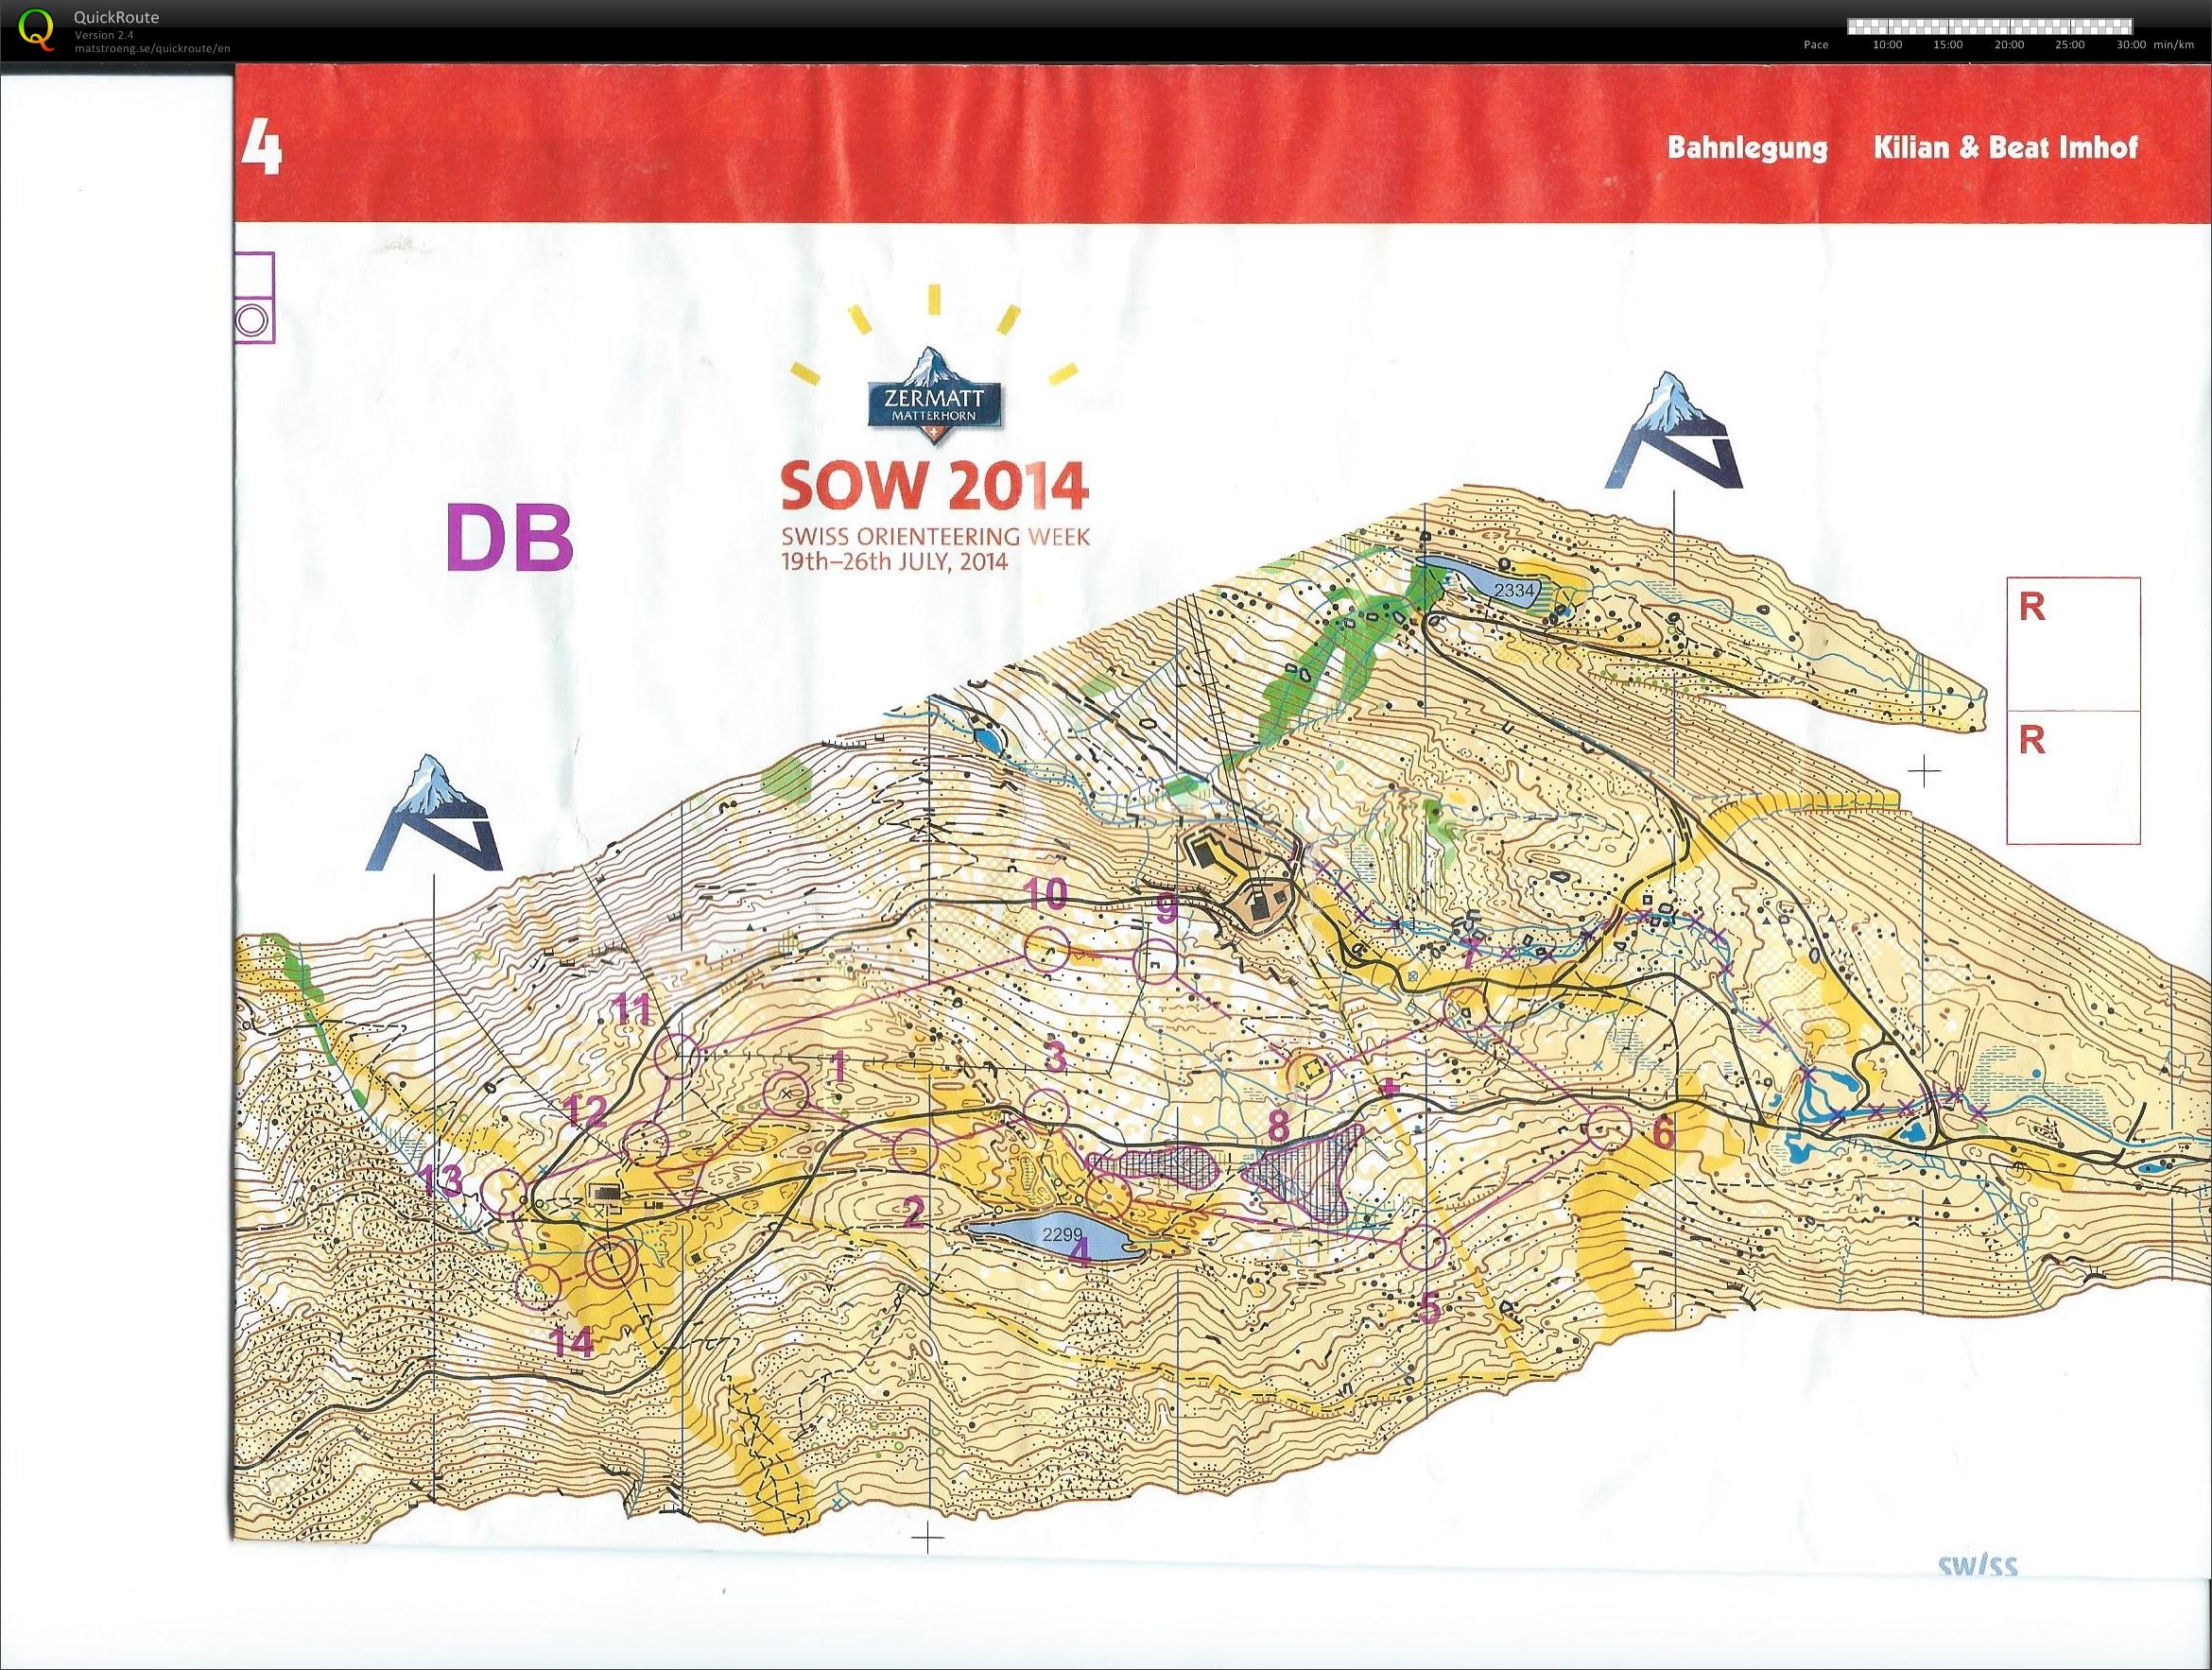 Swiss O-week etape 4 (2014-07-24)